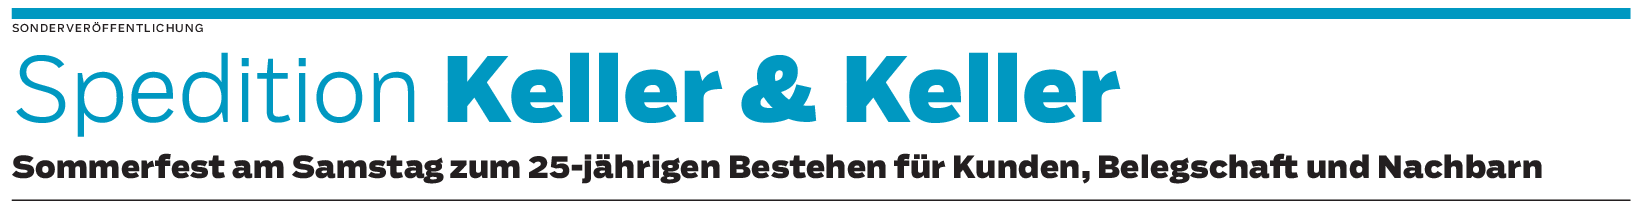 Spedition Keller & Keller in Bergbronn: In der Nische überzeugt